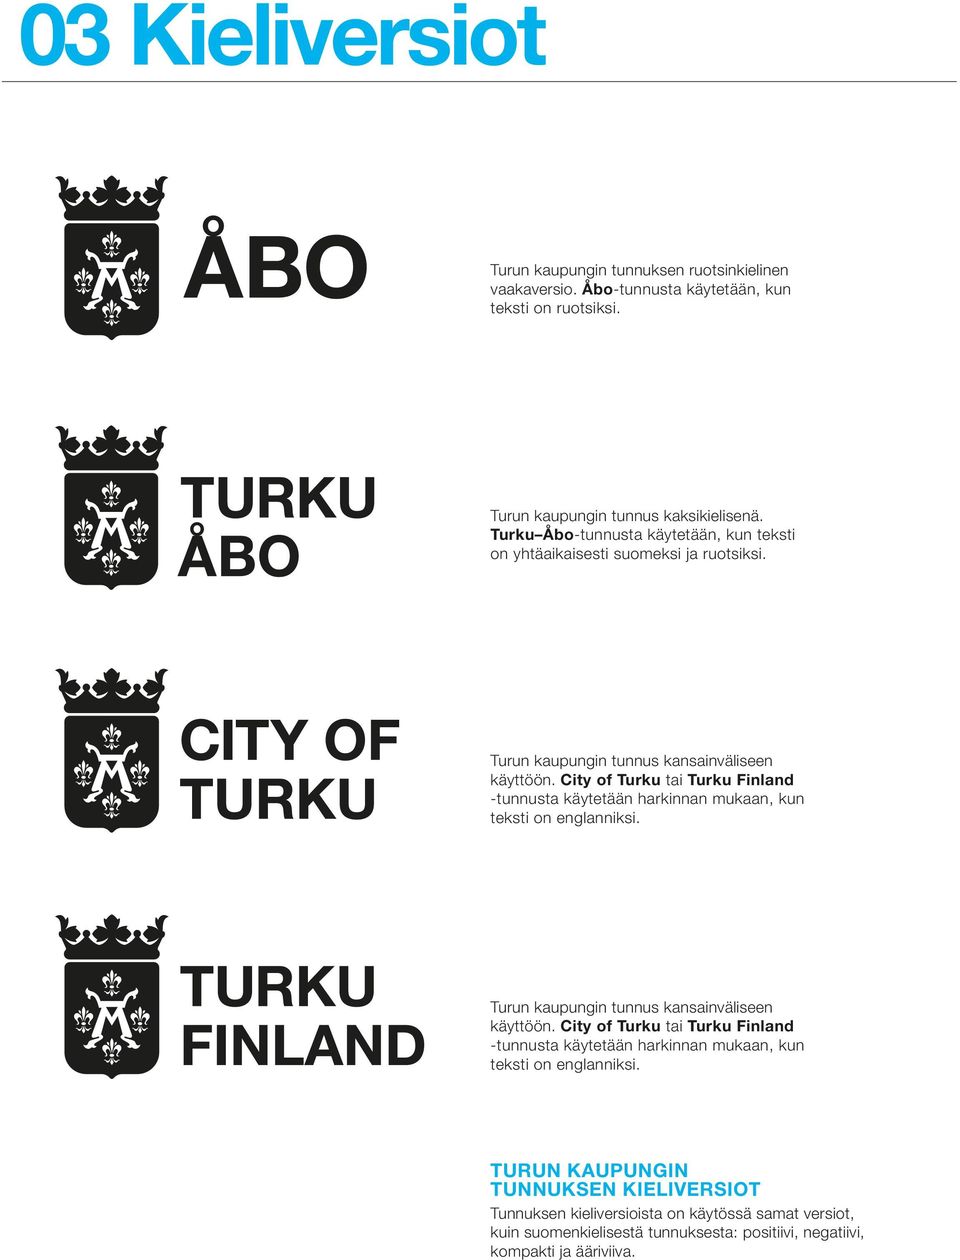 City of Turku tai Turku Finland -tunnusta käytetään harkinnan mukaan, kun teksti on englanniksi. Turun kaupungin tunnus kansainväliseen käyttöön.